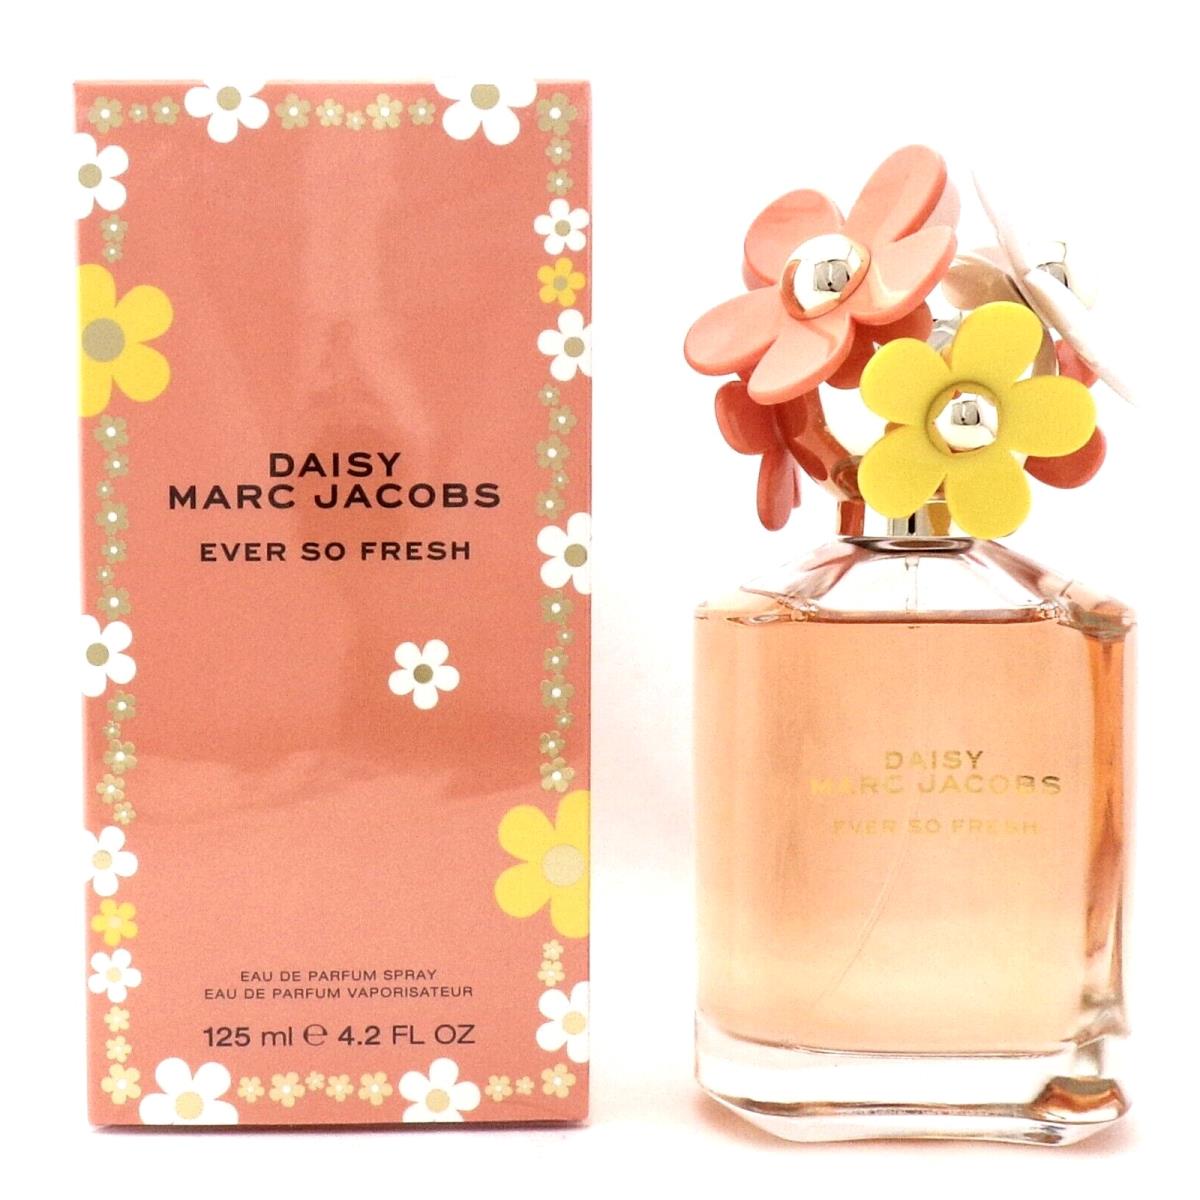 Marc Jacobs Daisy Ever So Fresh 4.2 oz Eau de Parfum Spray For Women Box